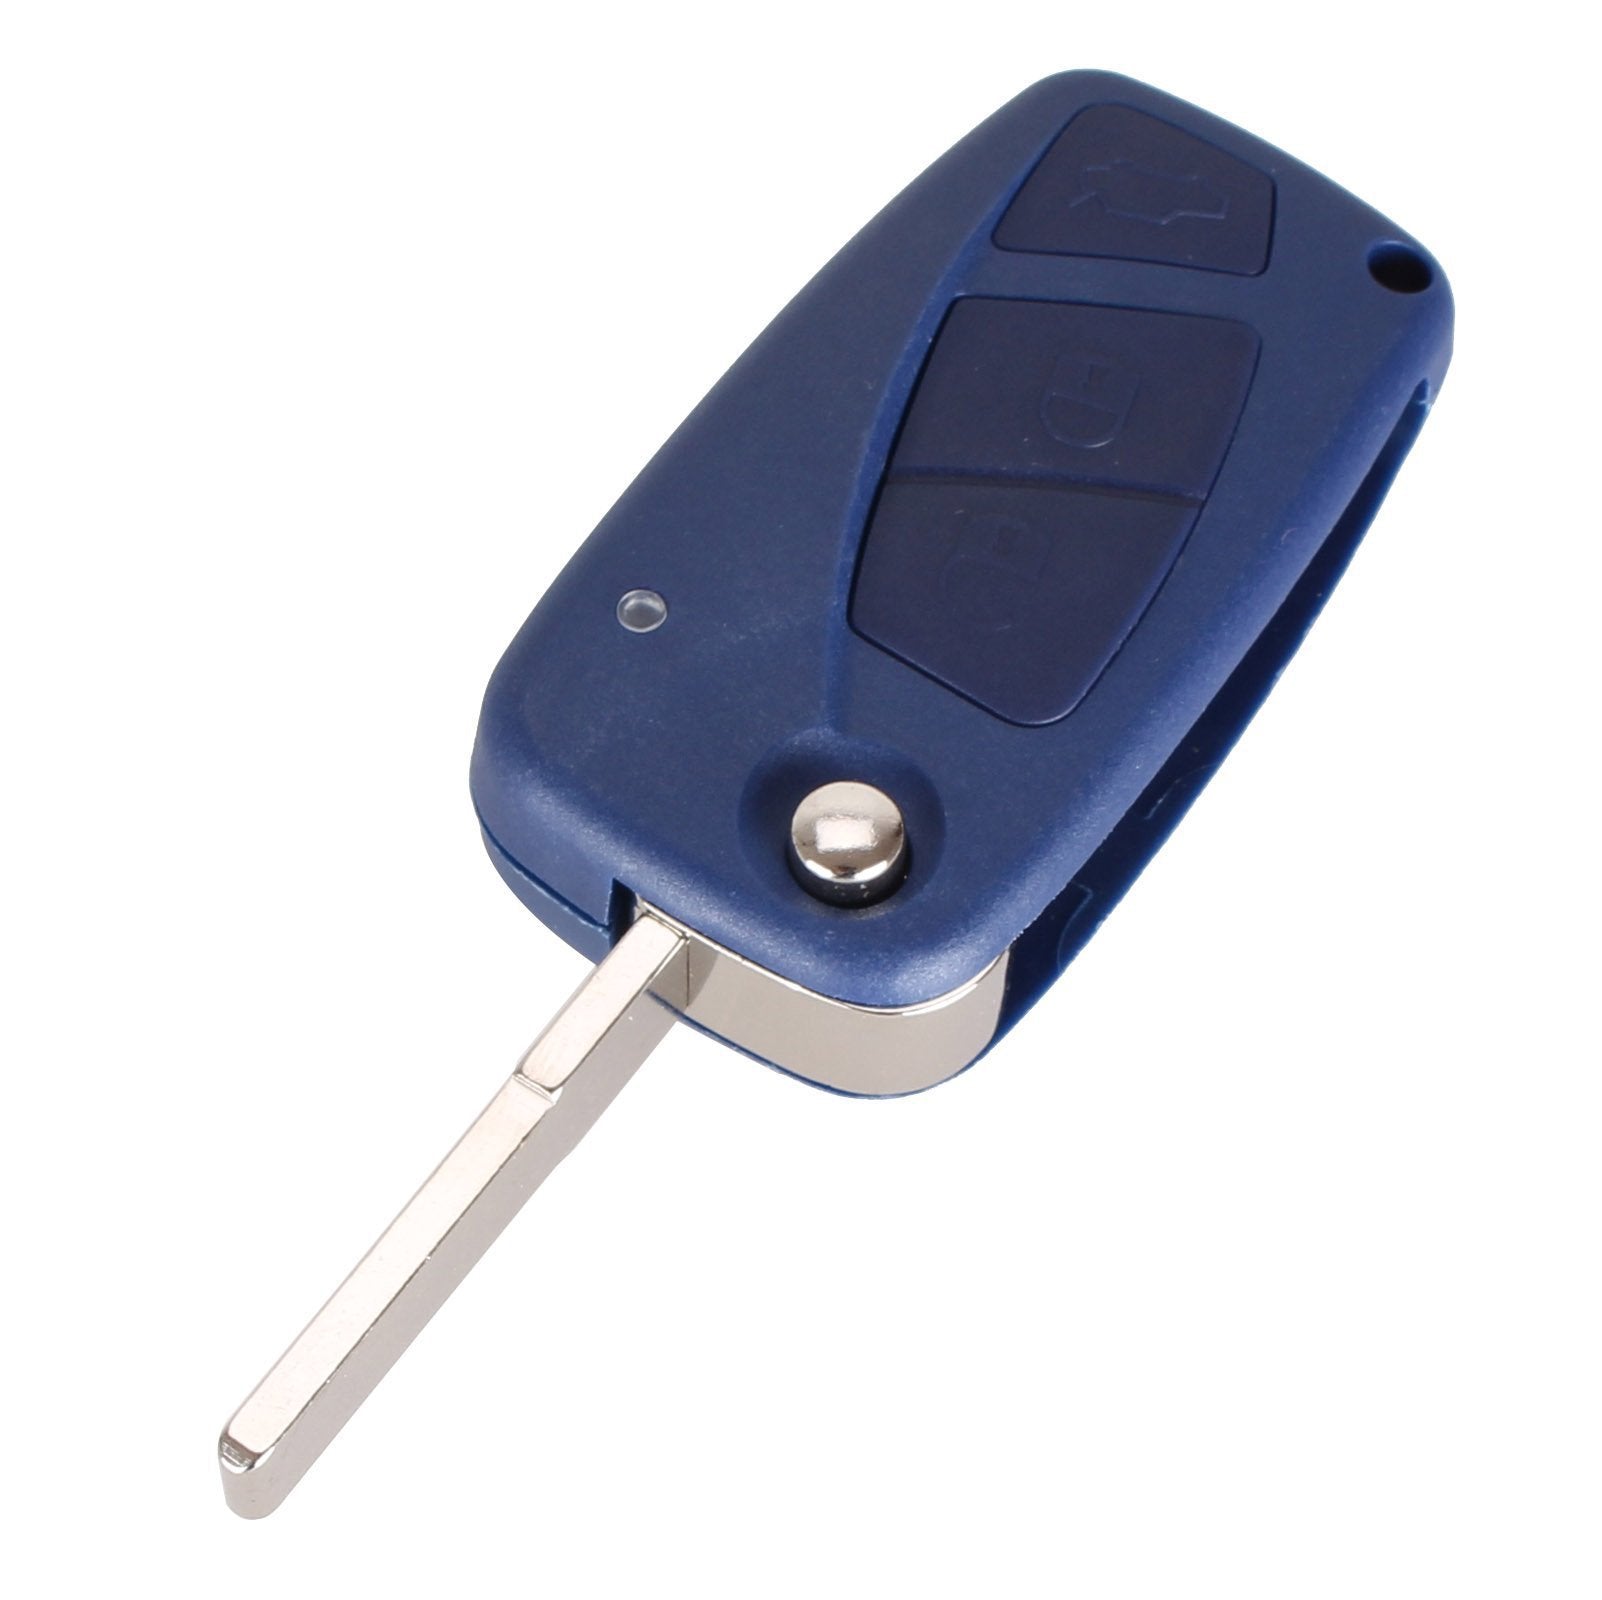 Kék színű, 3 gombos Fiat kulcsház, bicskakulcs nyers kulcsszárral.